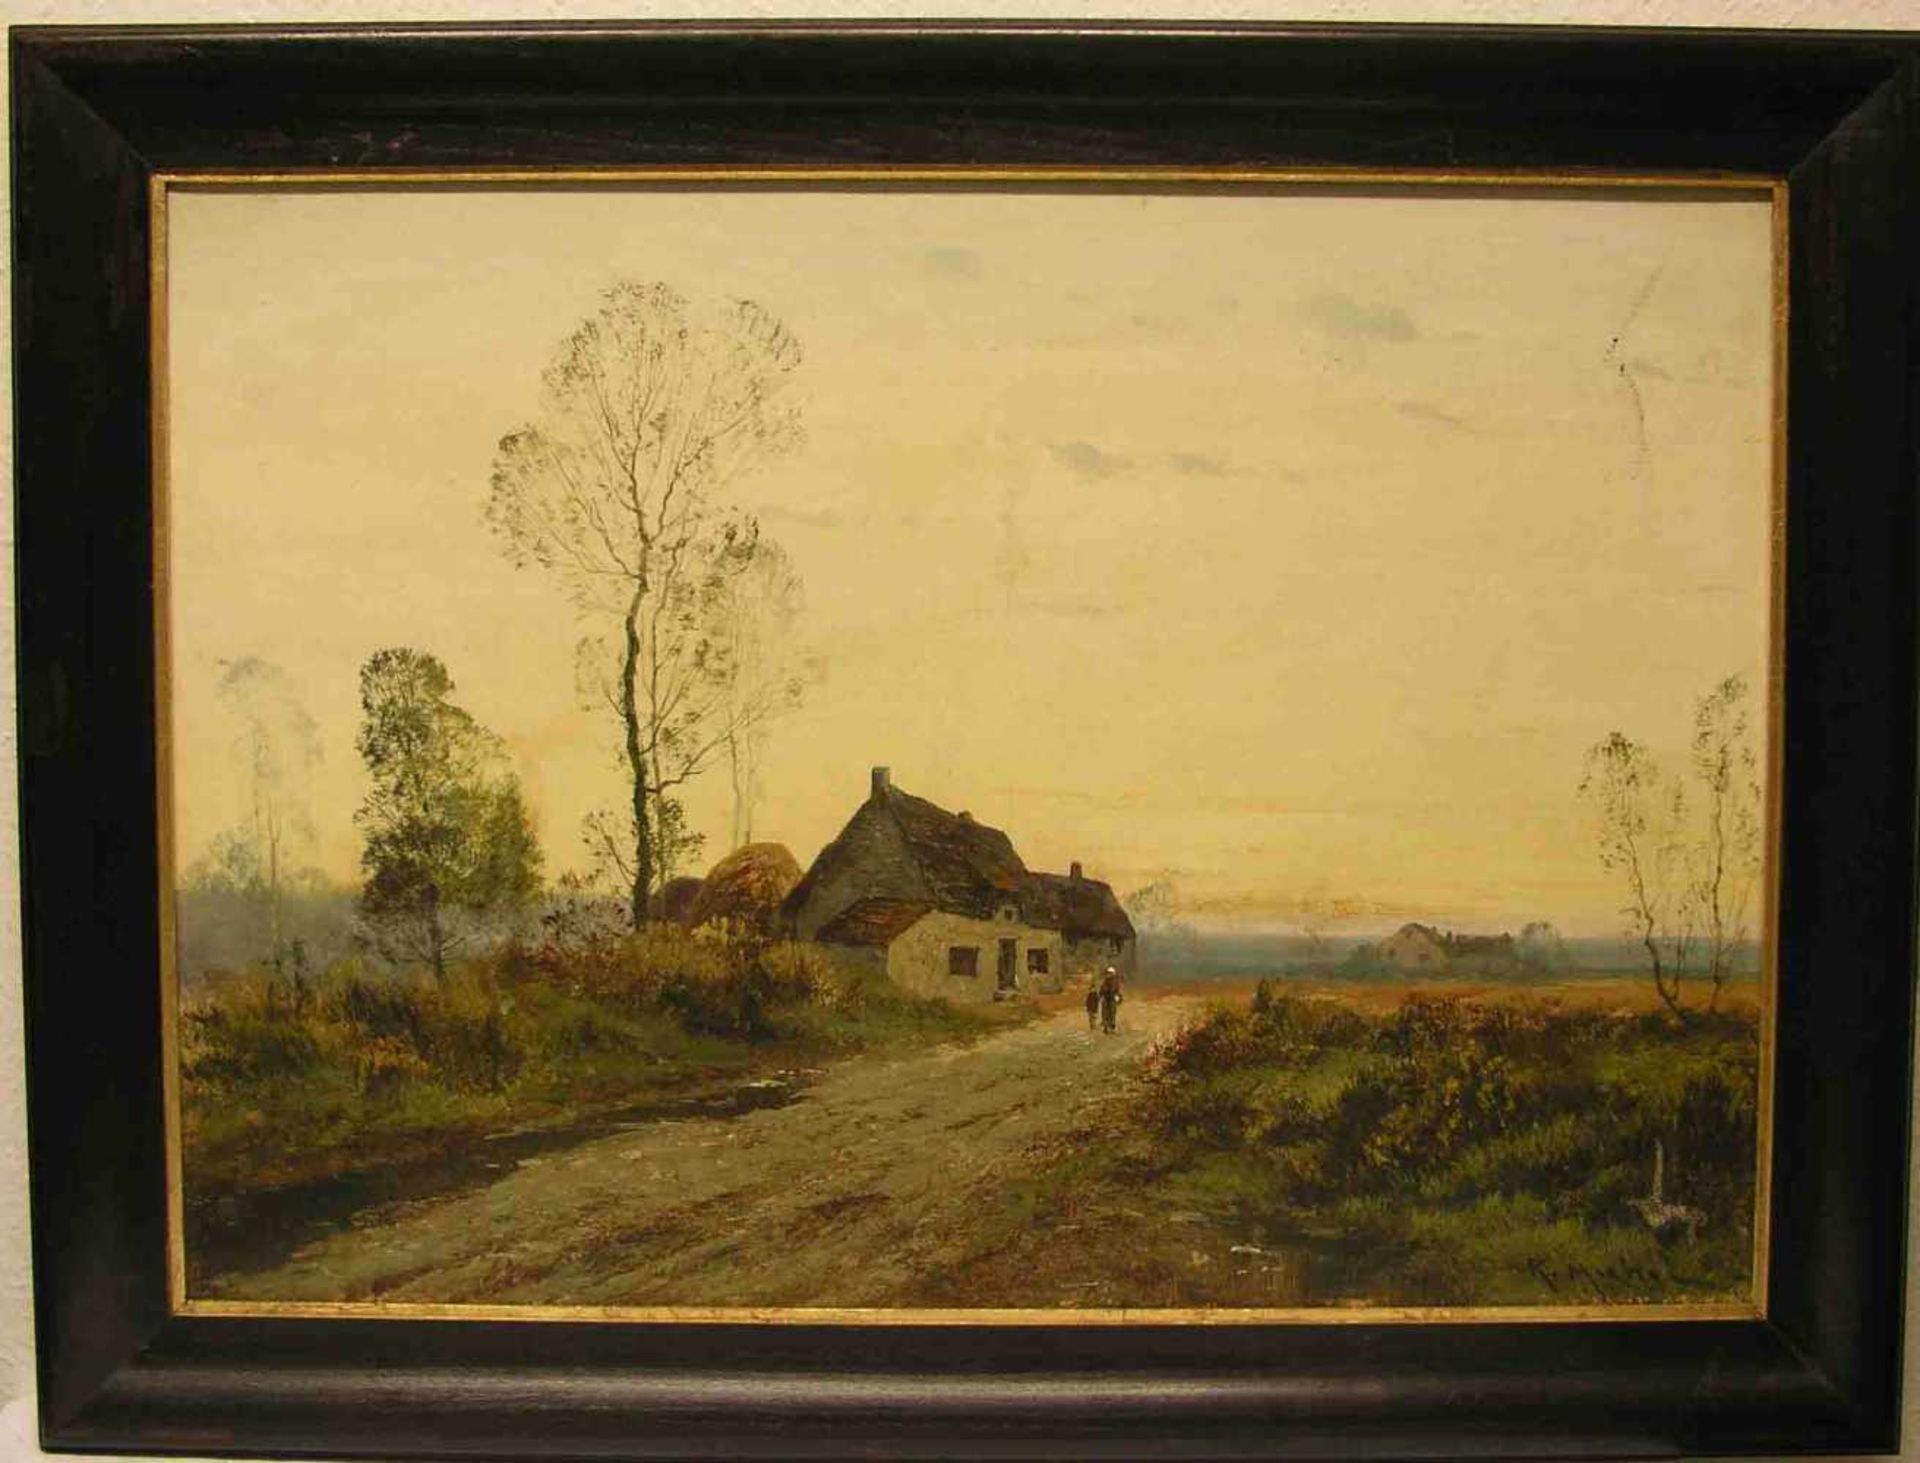 Michal, R. (wohl Eugène Galien-Laloue 1854 - 1941): "Landschaft mit Bauernhaus und<